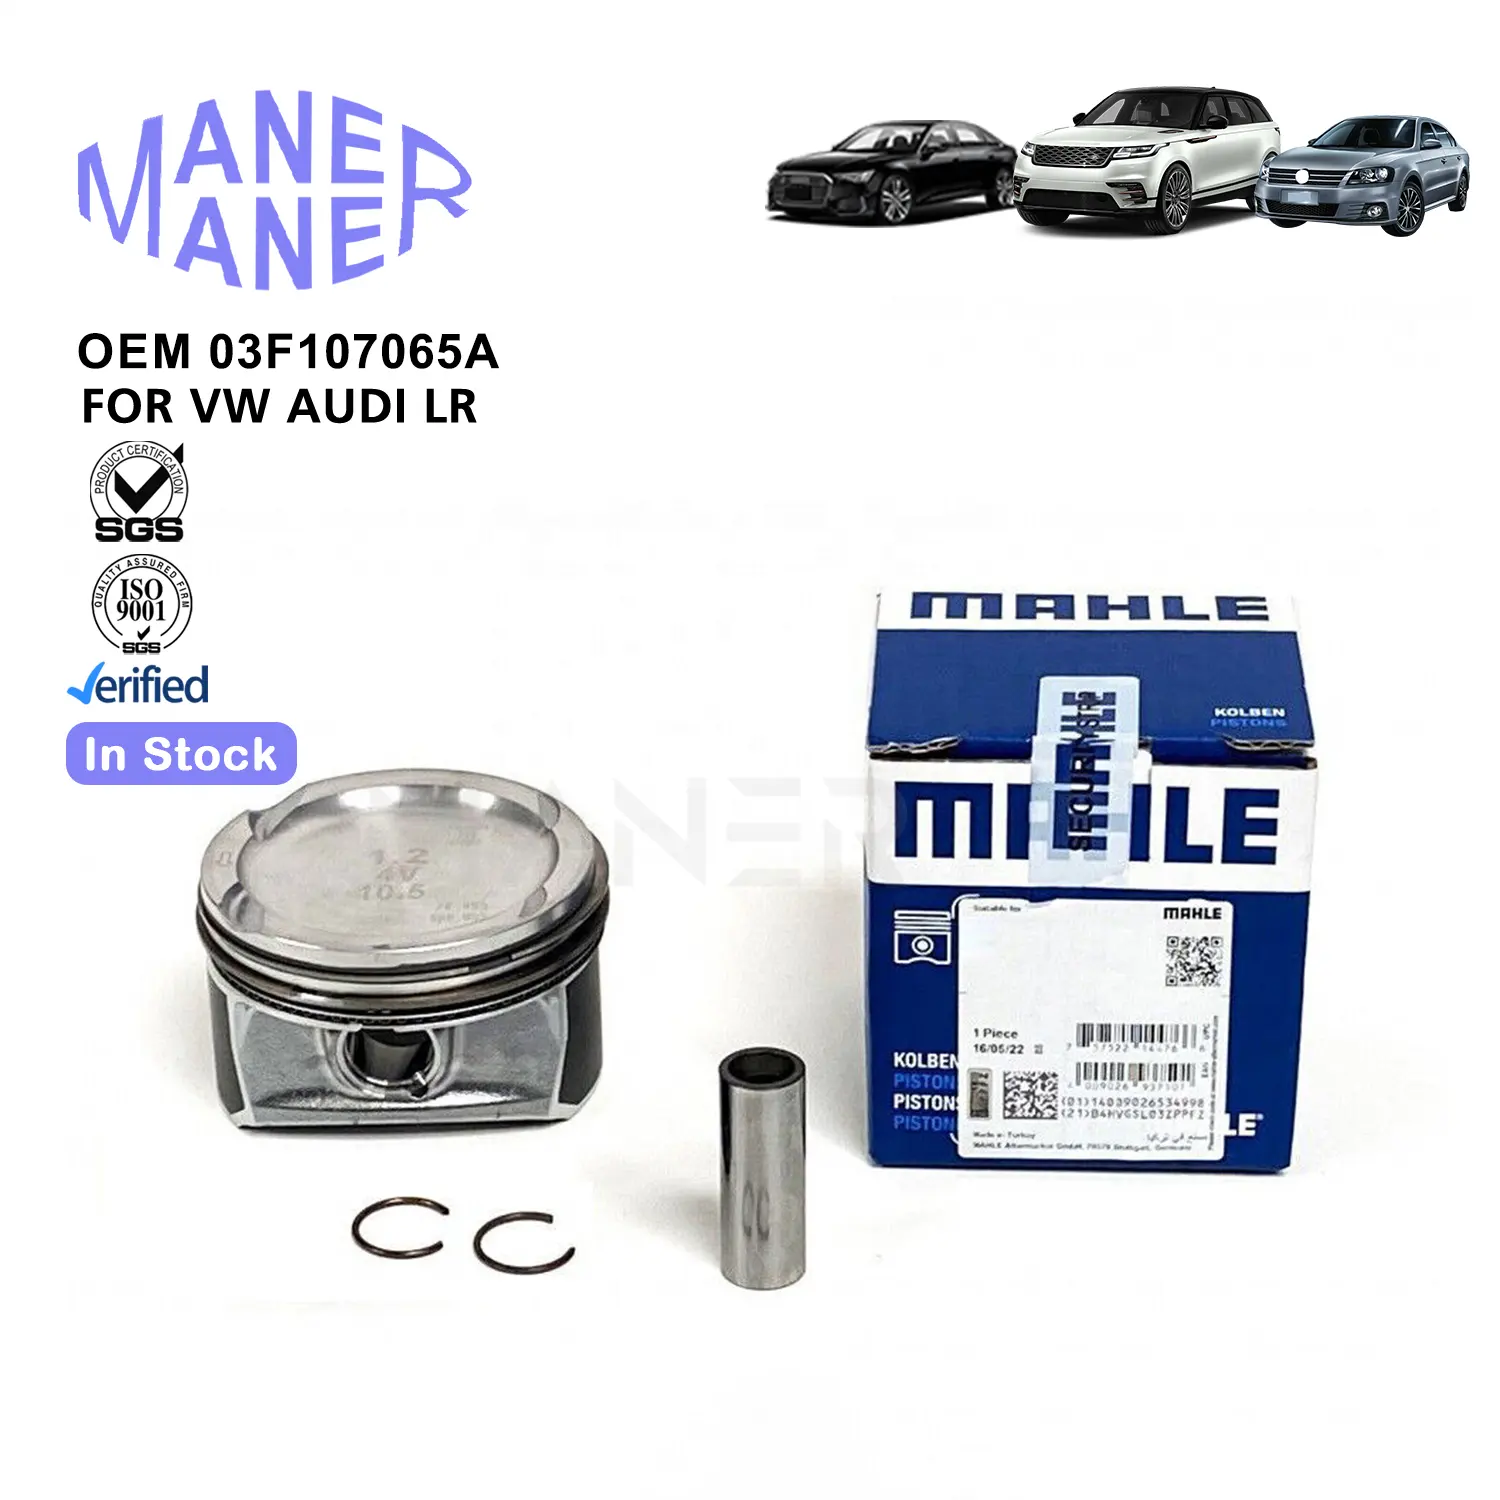 Maner tự động hệ thống động cơ 03f107065d 03f107065f 03f107065a 03f107065g sản xuất cũng được thực hiện động cơ piston cho Audi VW GOLF Seat